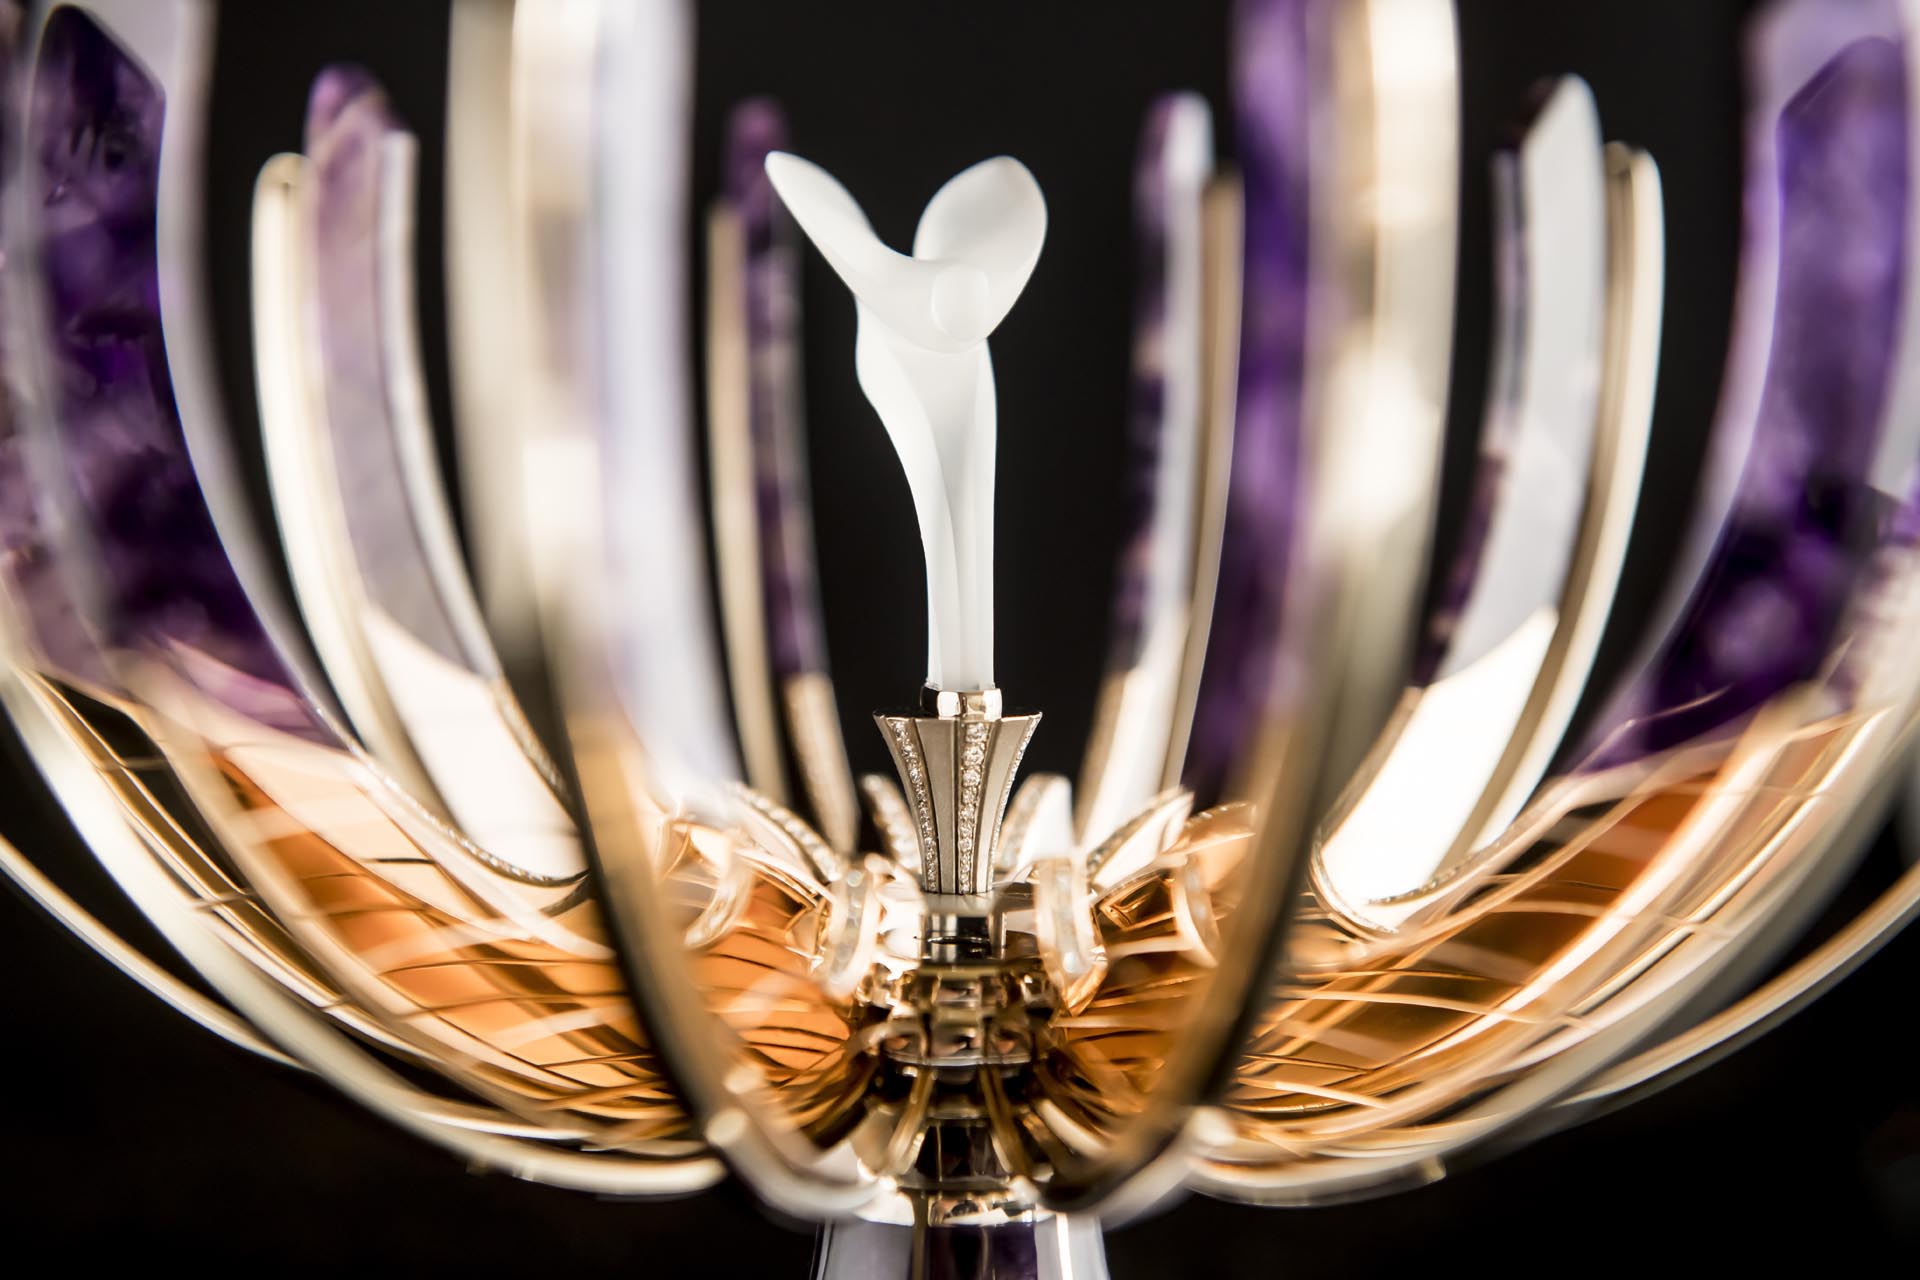 The Rolls-Royce ‘Spirit of Ecstasy’ Fabergé egg